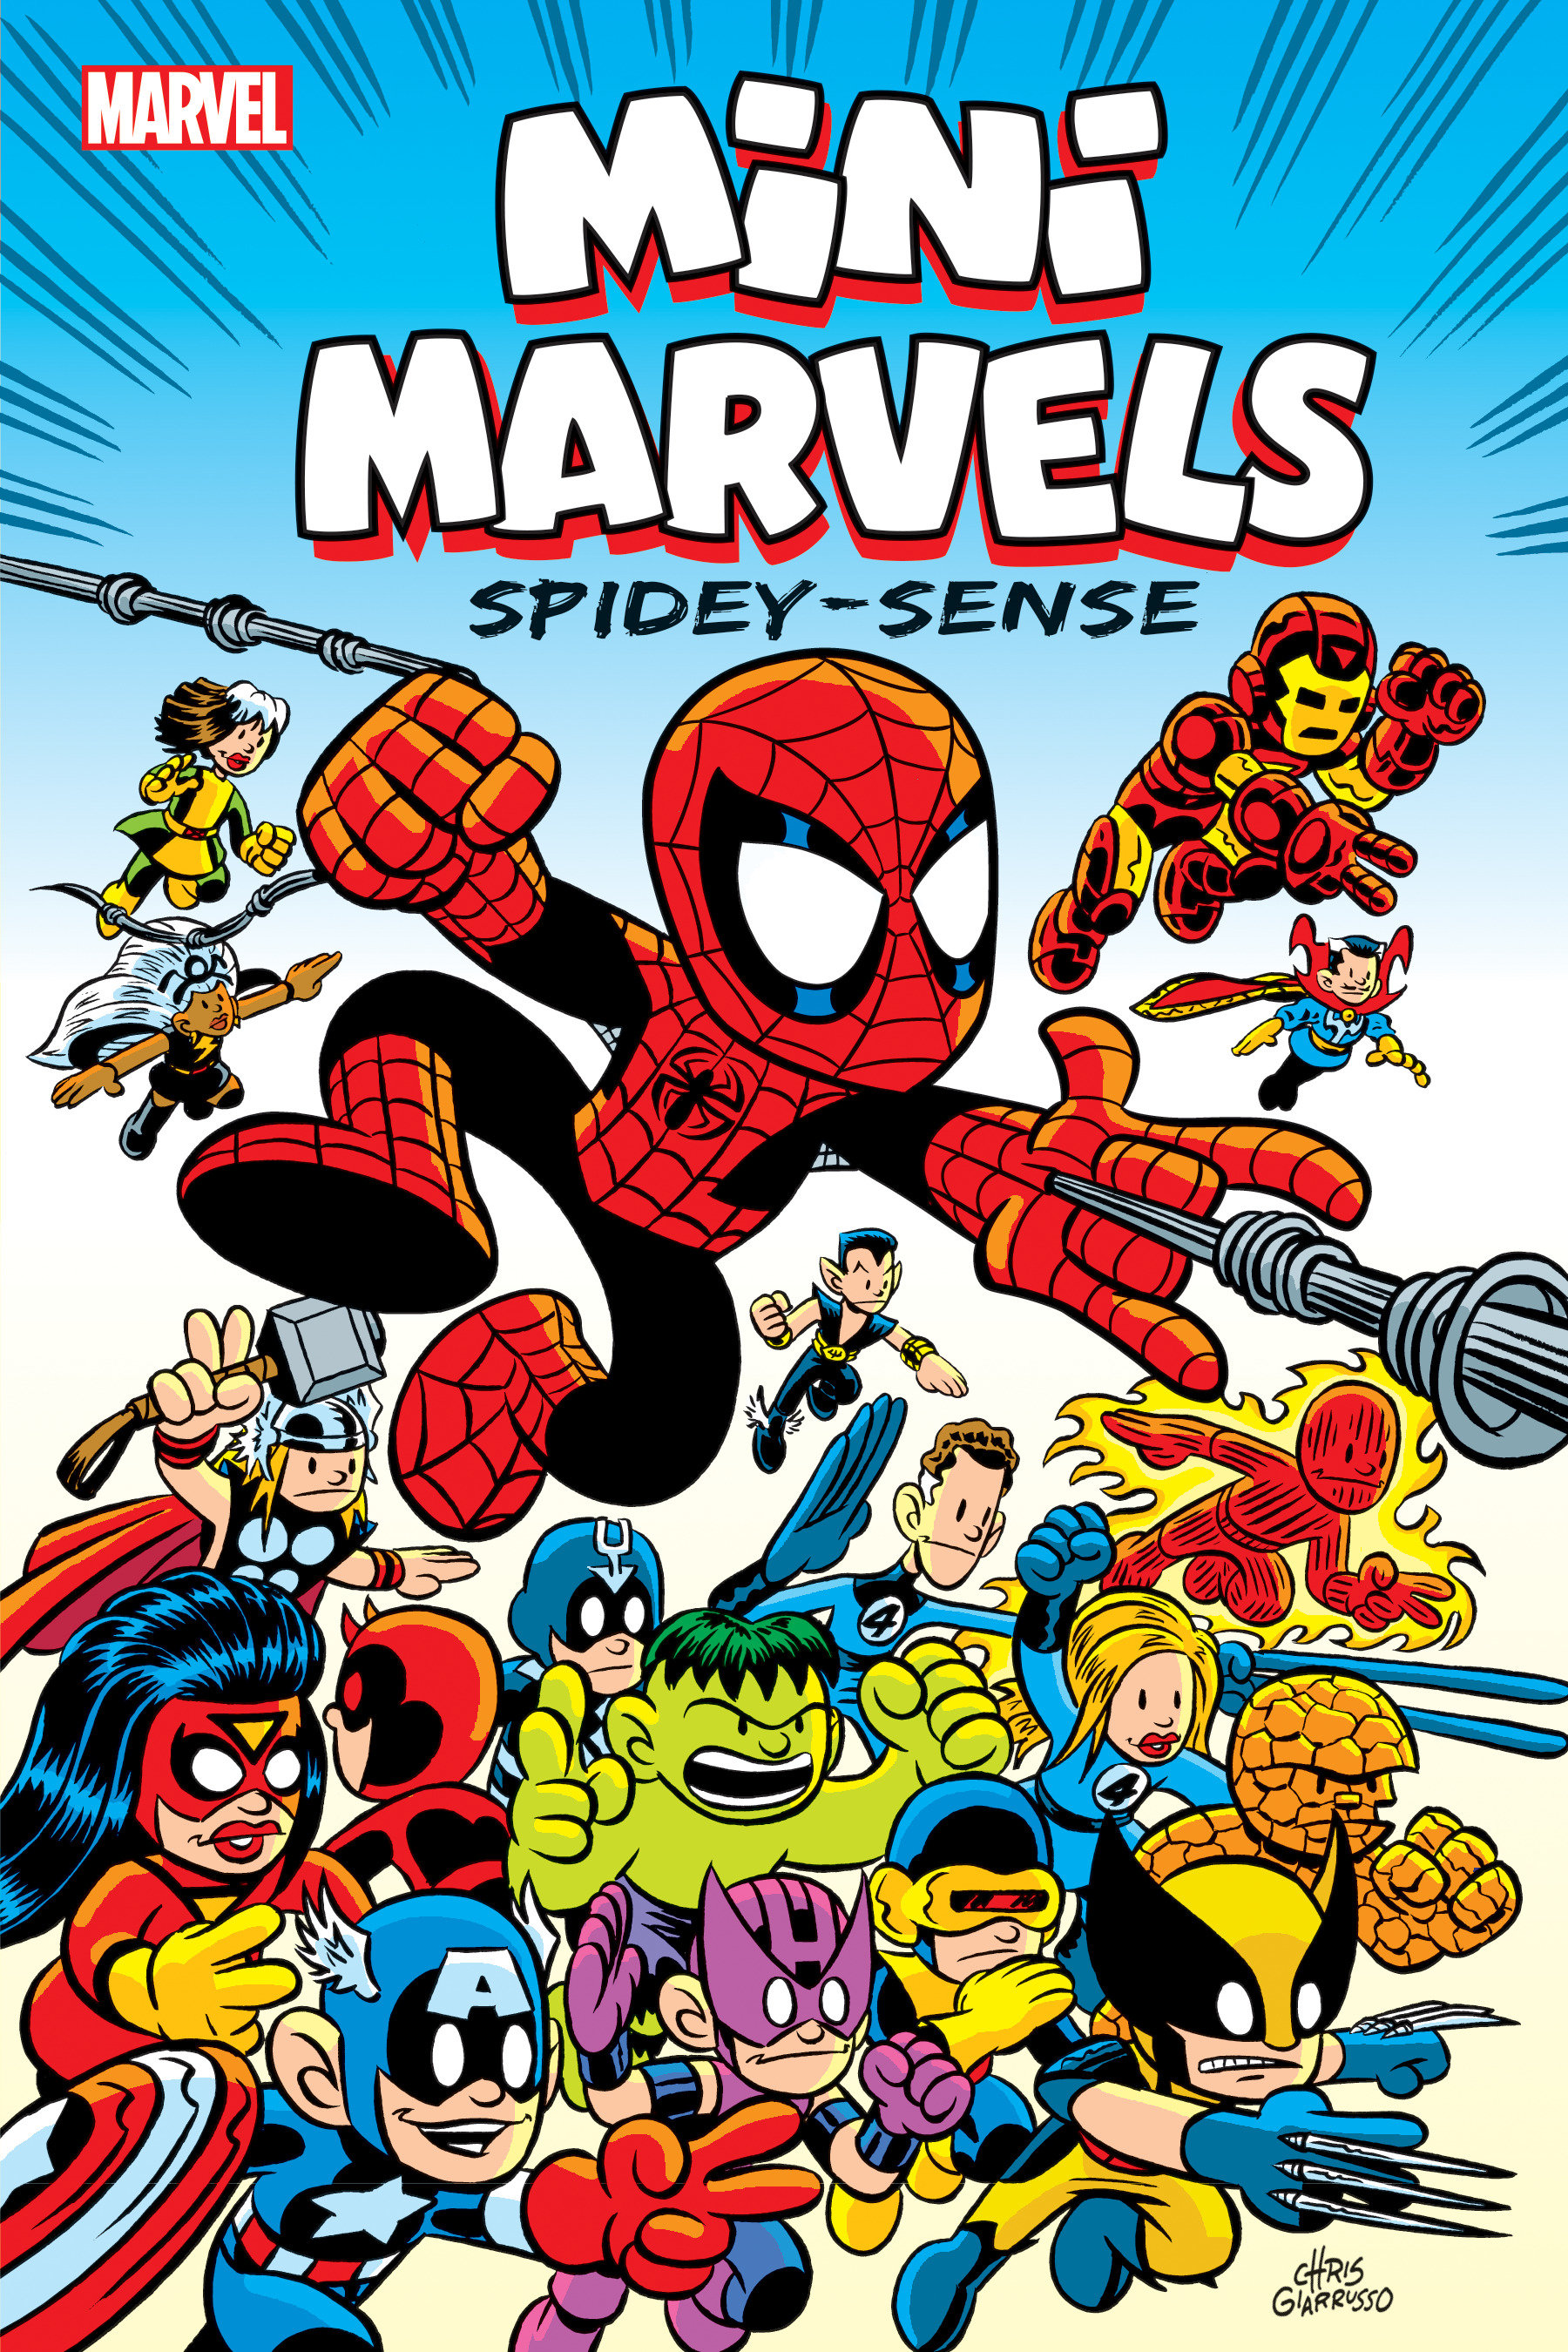 Mini Marvels: Spidey-Sense Graphic Novel